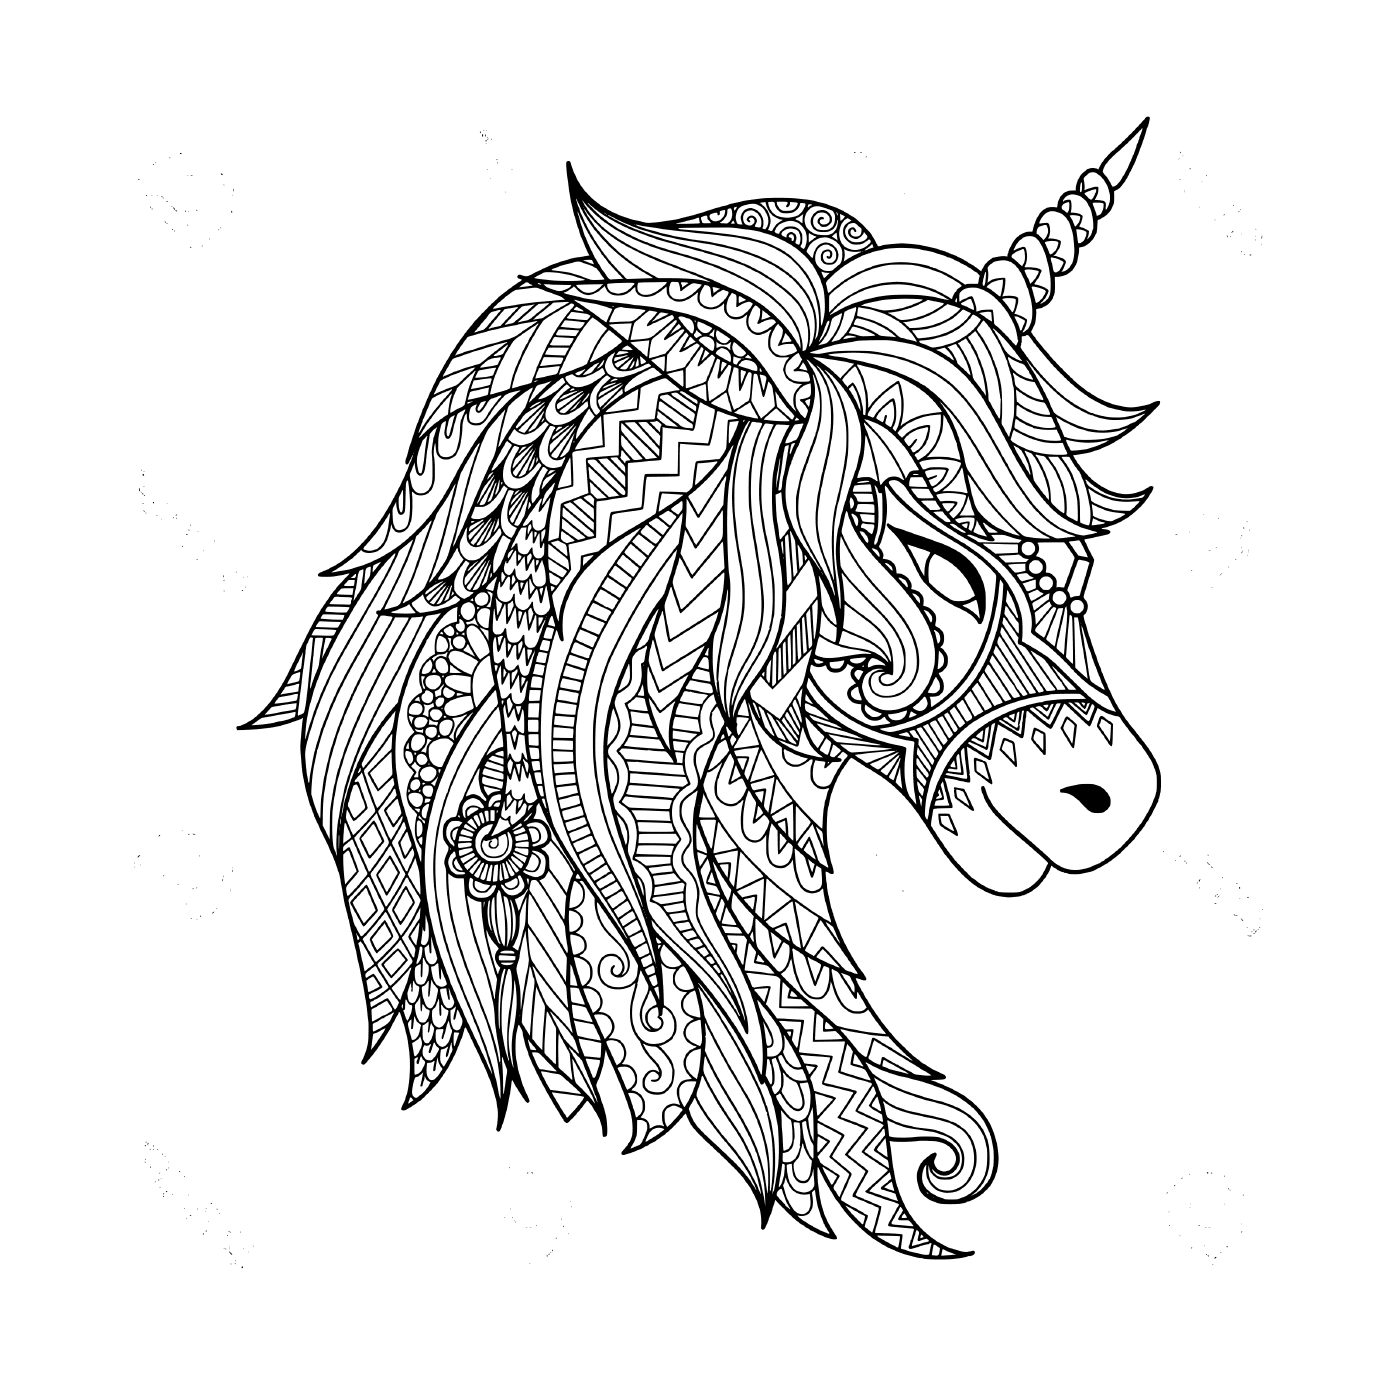  tatuaje adulto que representa un unicornio 